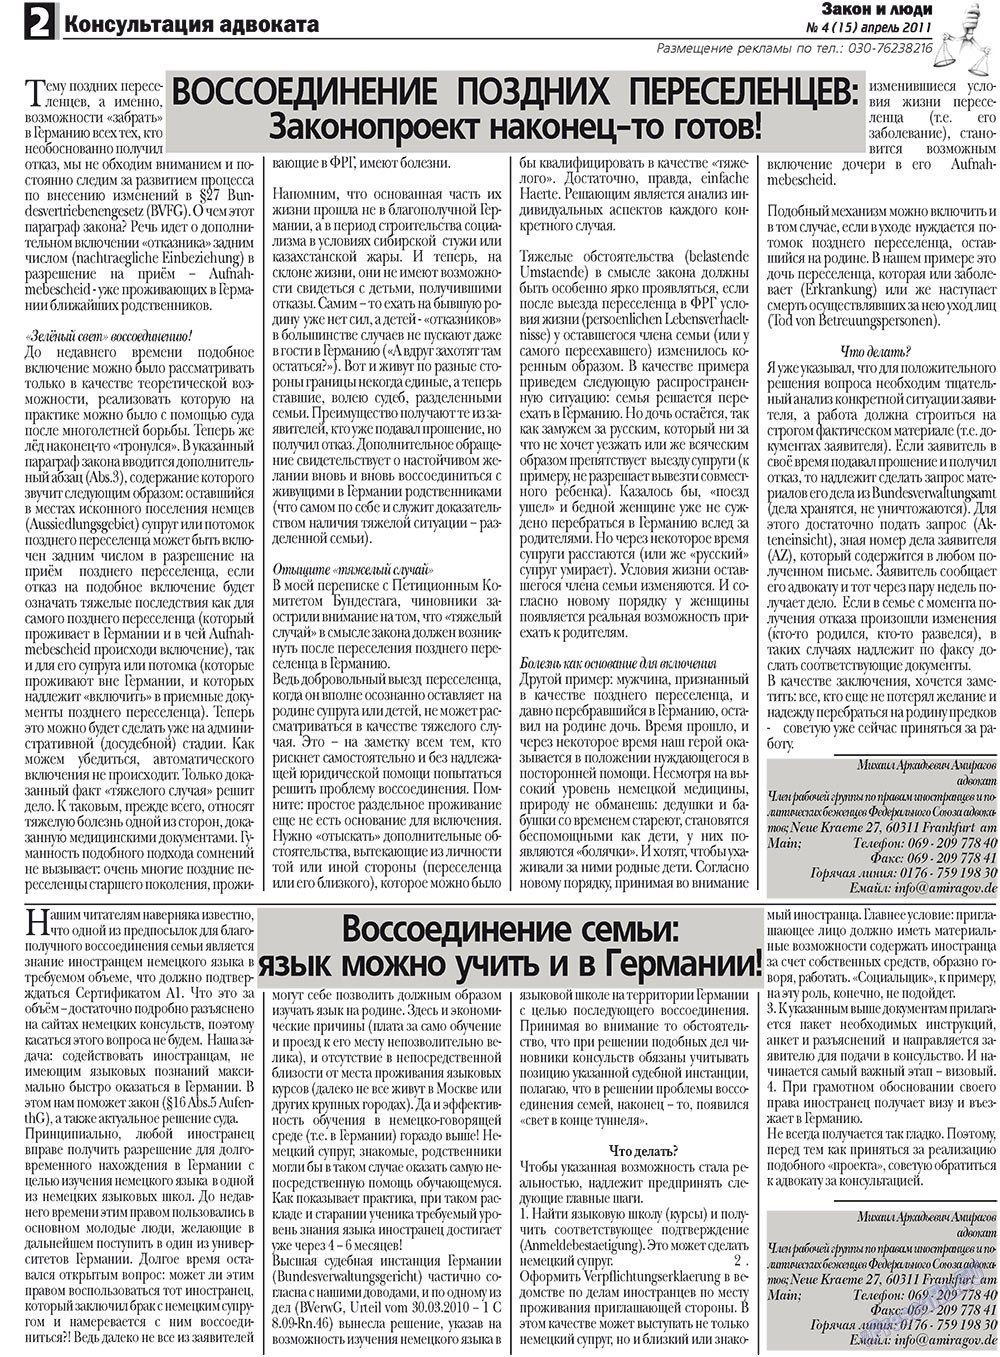 Закон и люди, газета. 2011 №4 стр.2